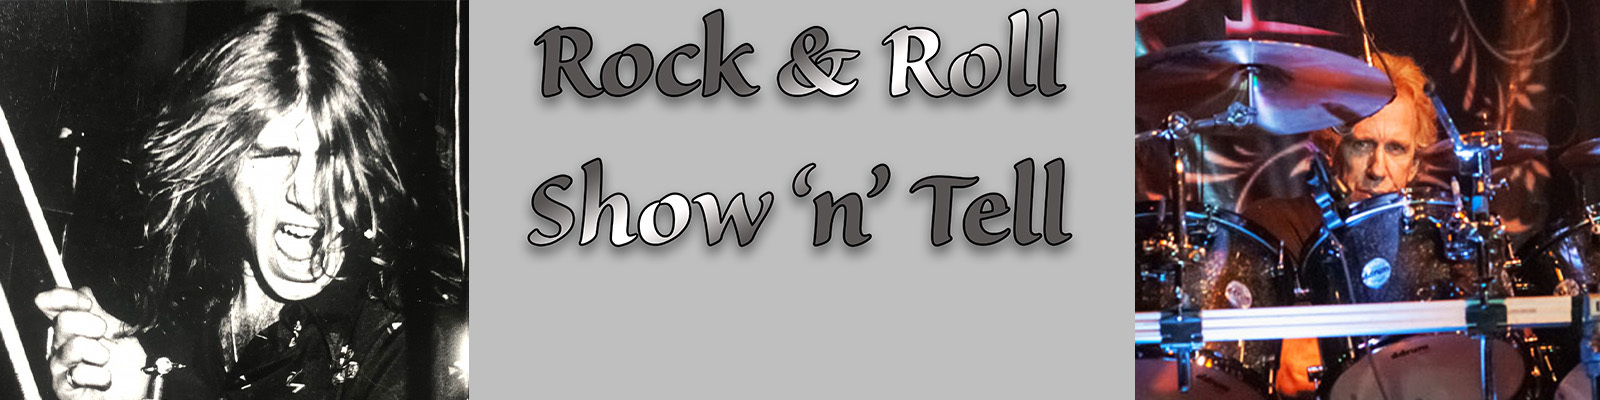 Steve Luongo’s Rock & Roll Show ‘n‘ Tell